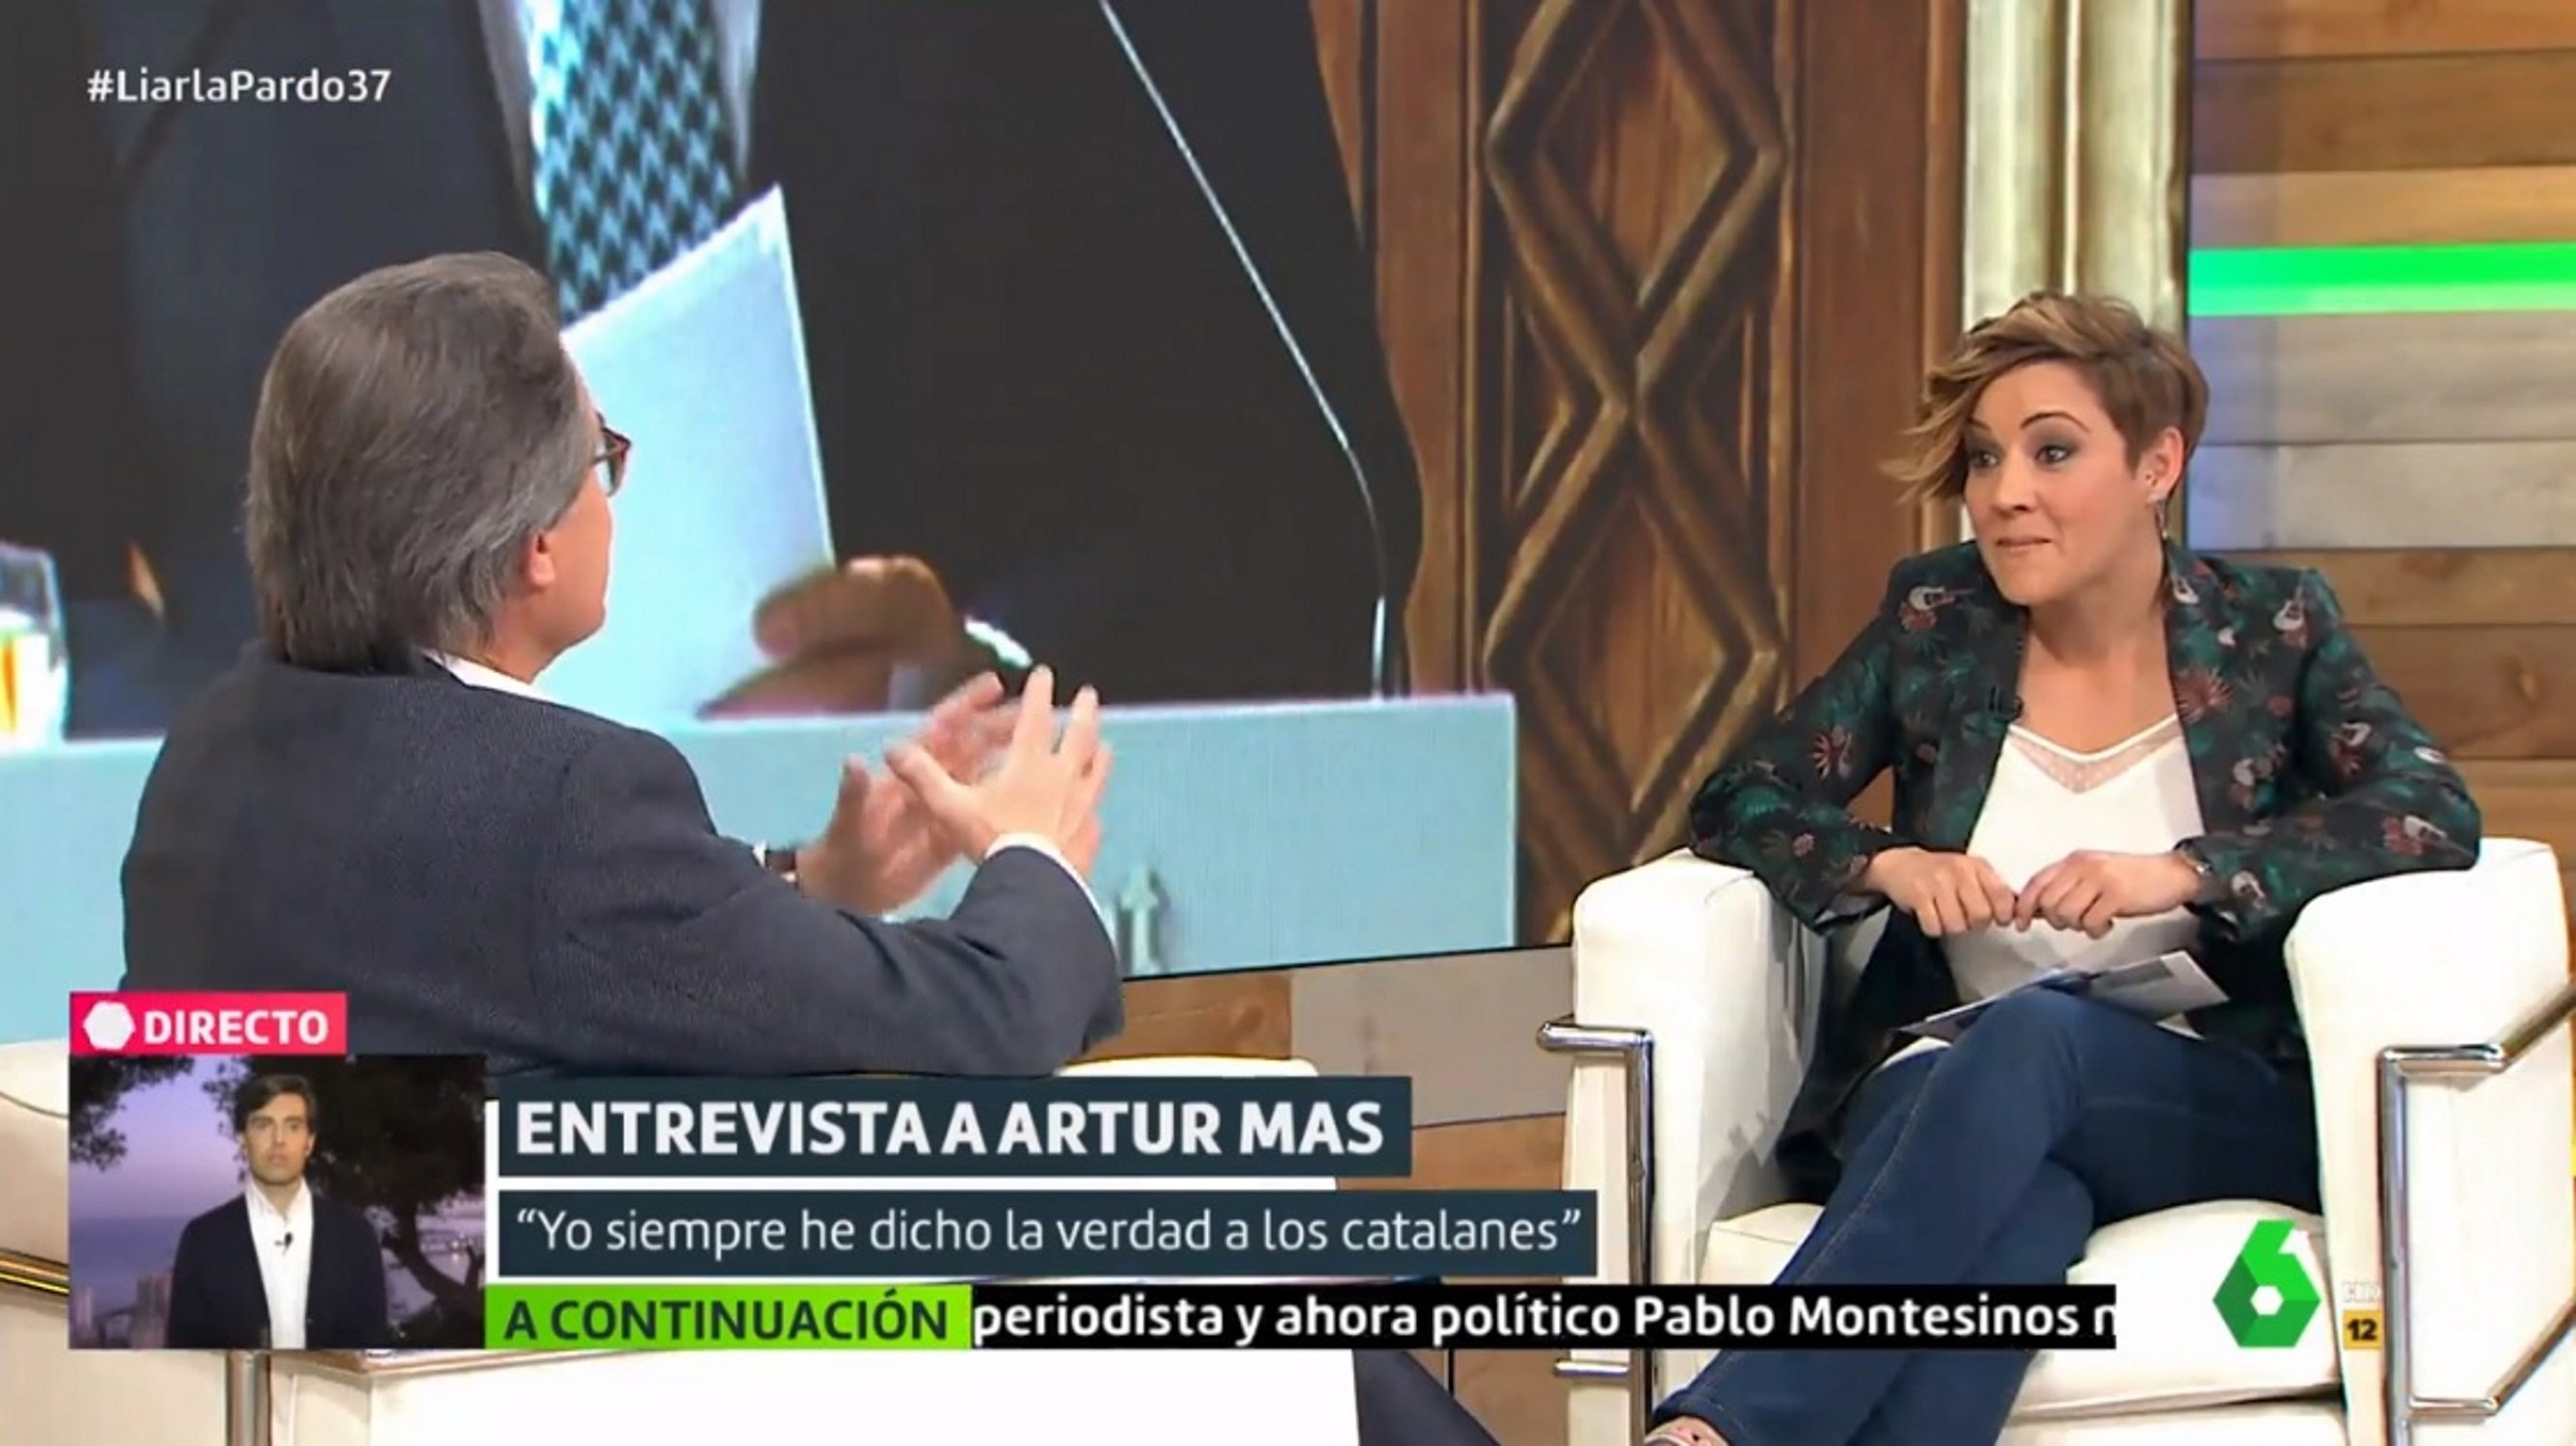 Cristina Pardo pierde los papeles entrevistando a Artur Mas y lo acusa de mentiroso